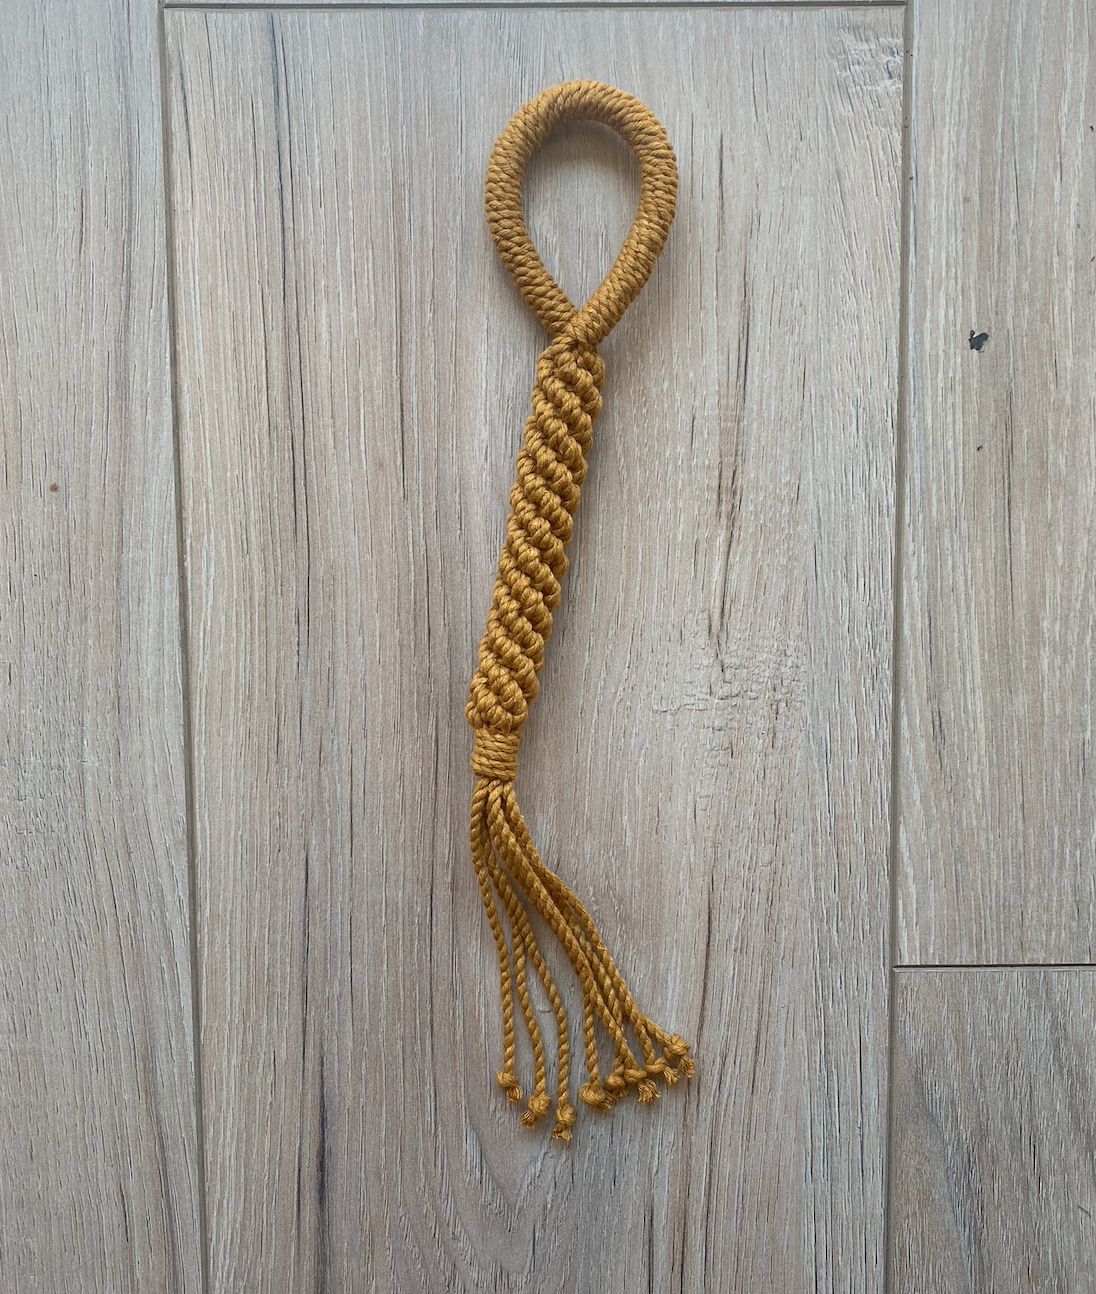 Dog Rope Tug Toy